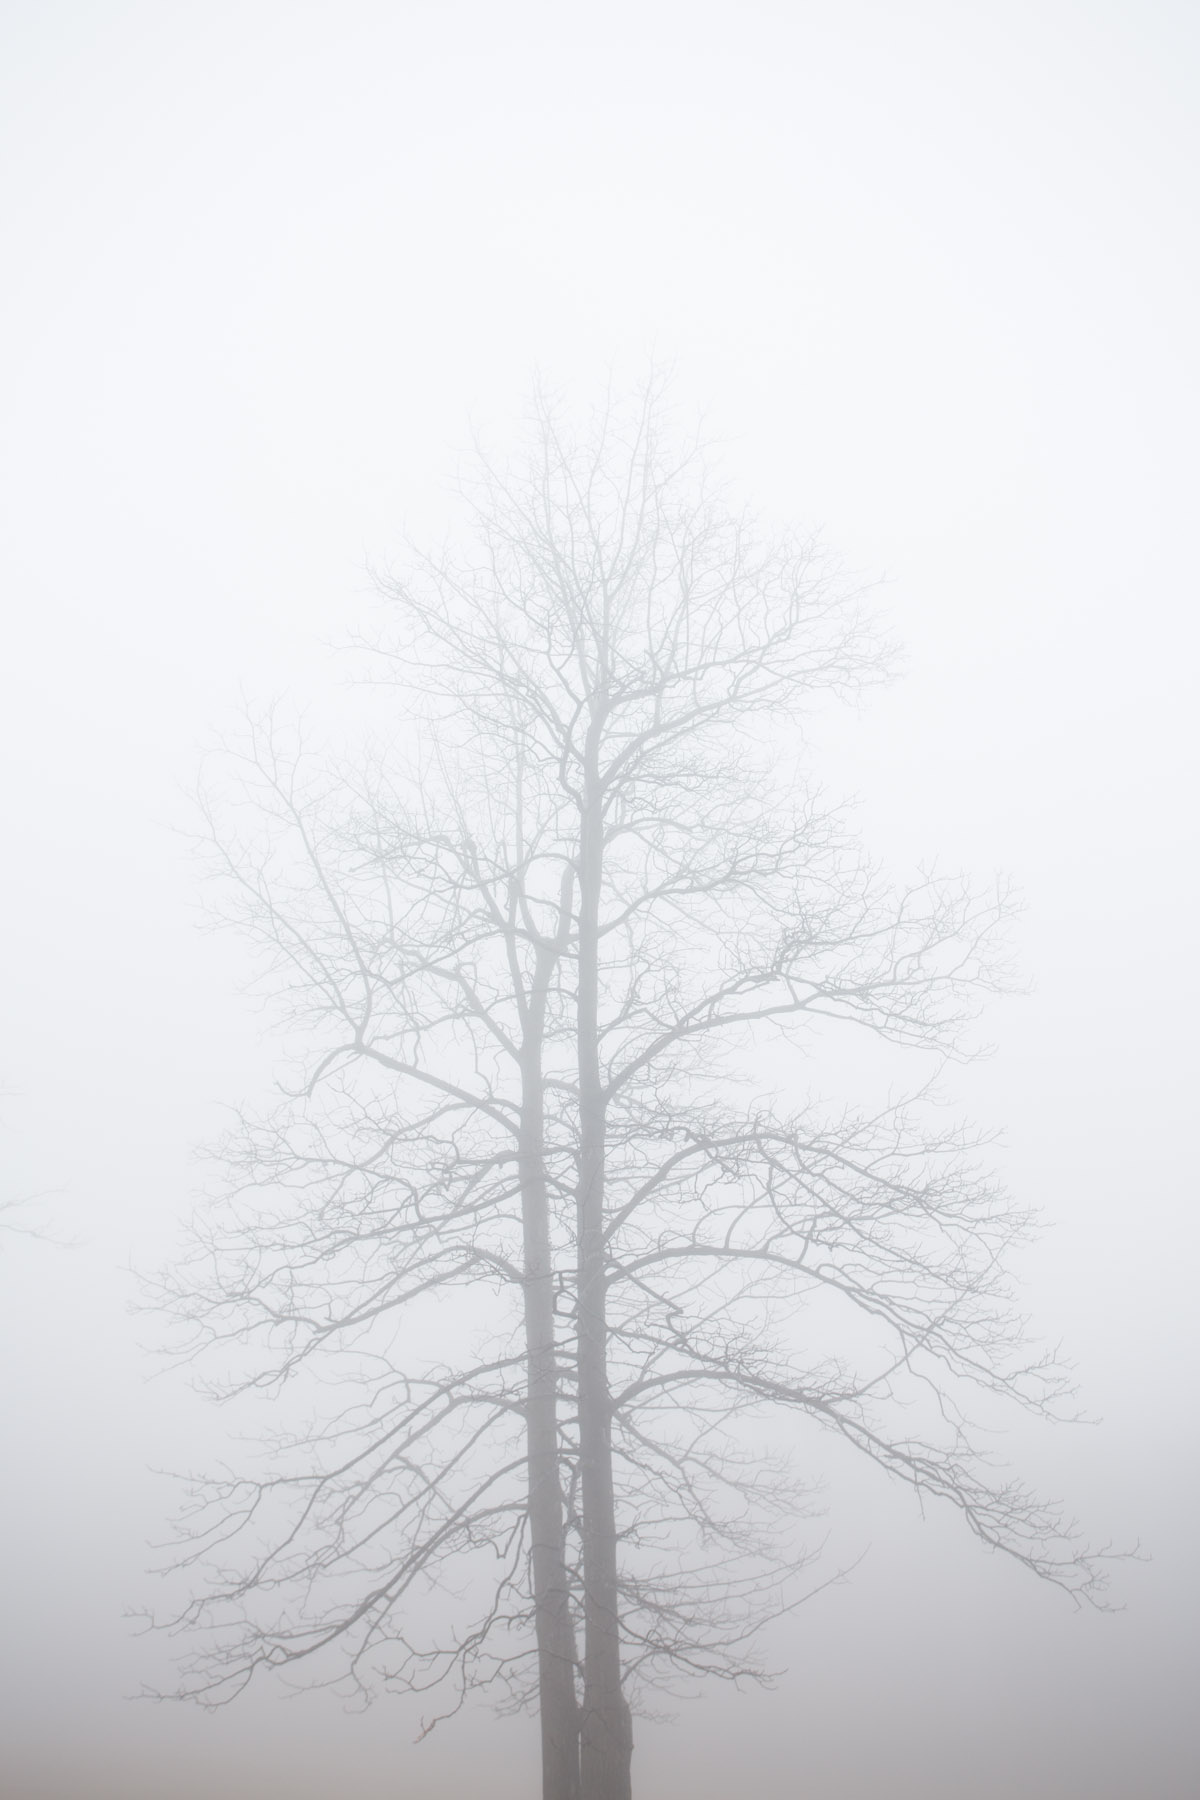 RA_tate in fog-201602206665.jpg